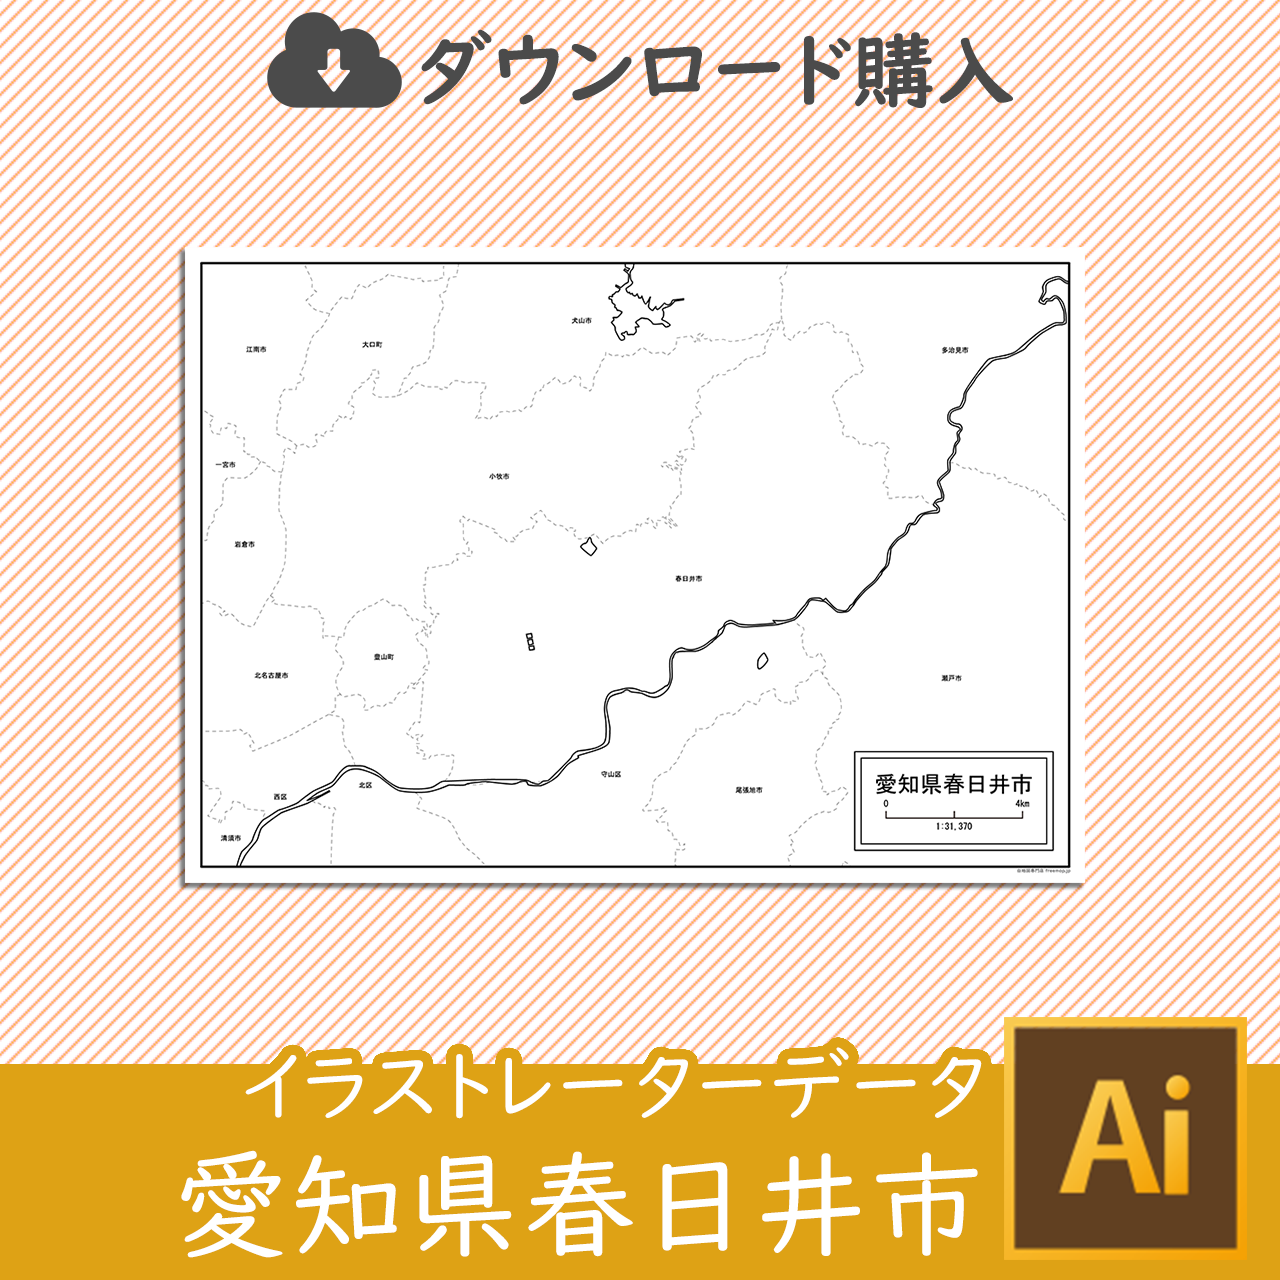 春日井市のaiデータのサムネイル画像